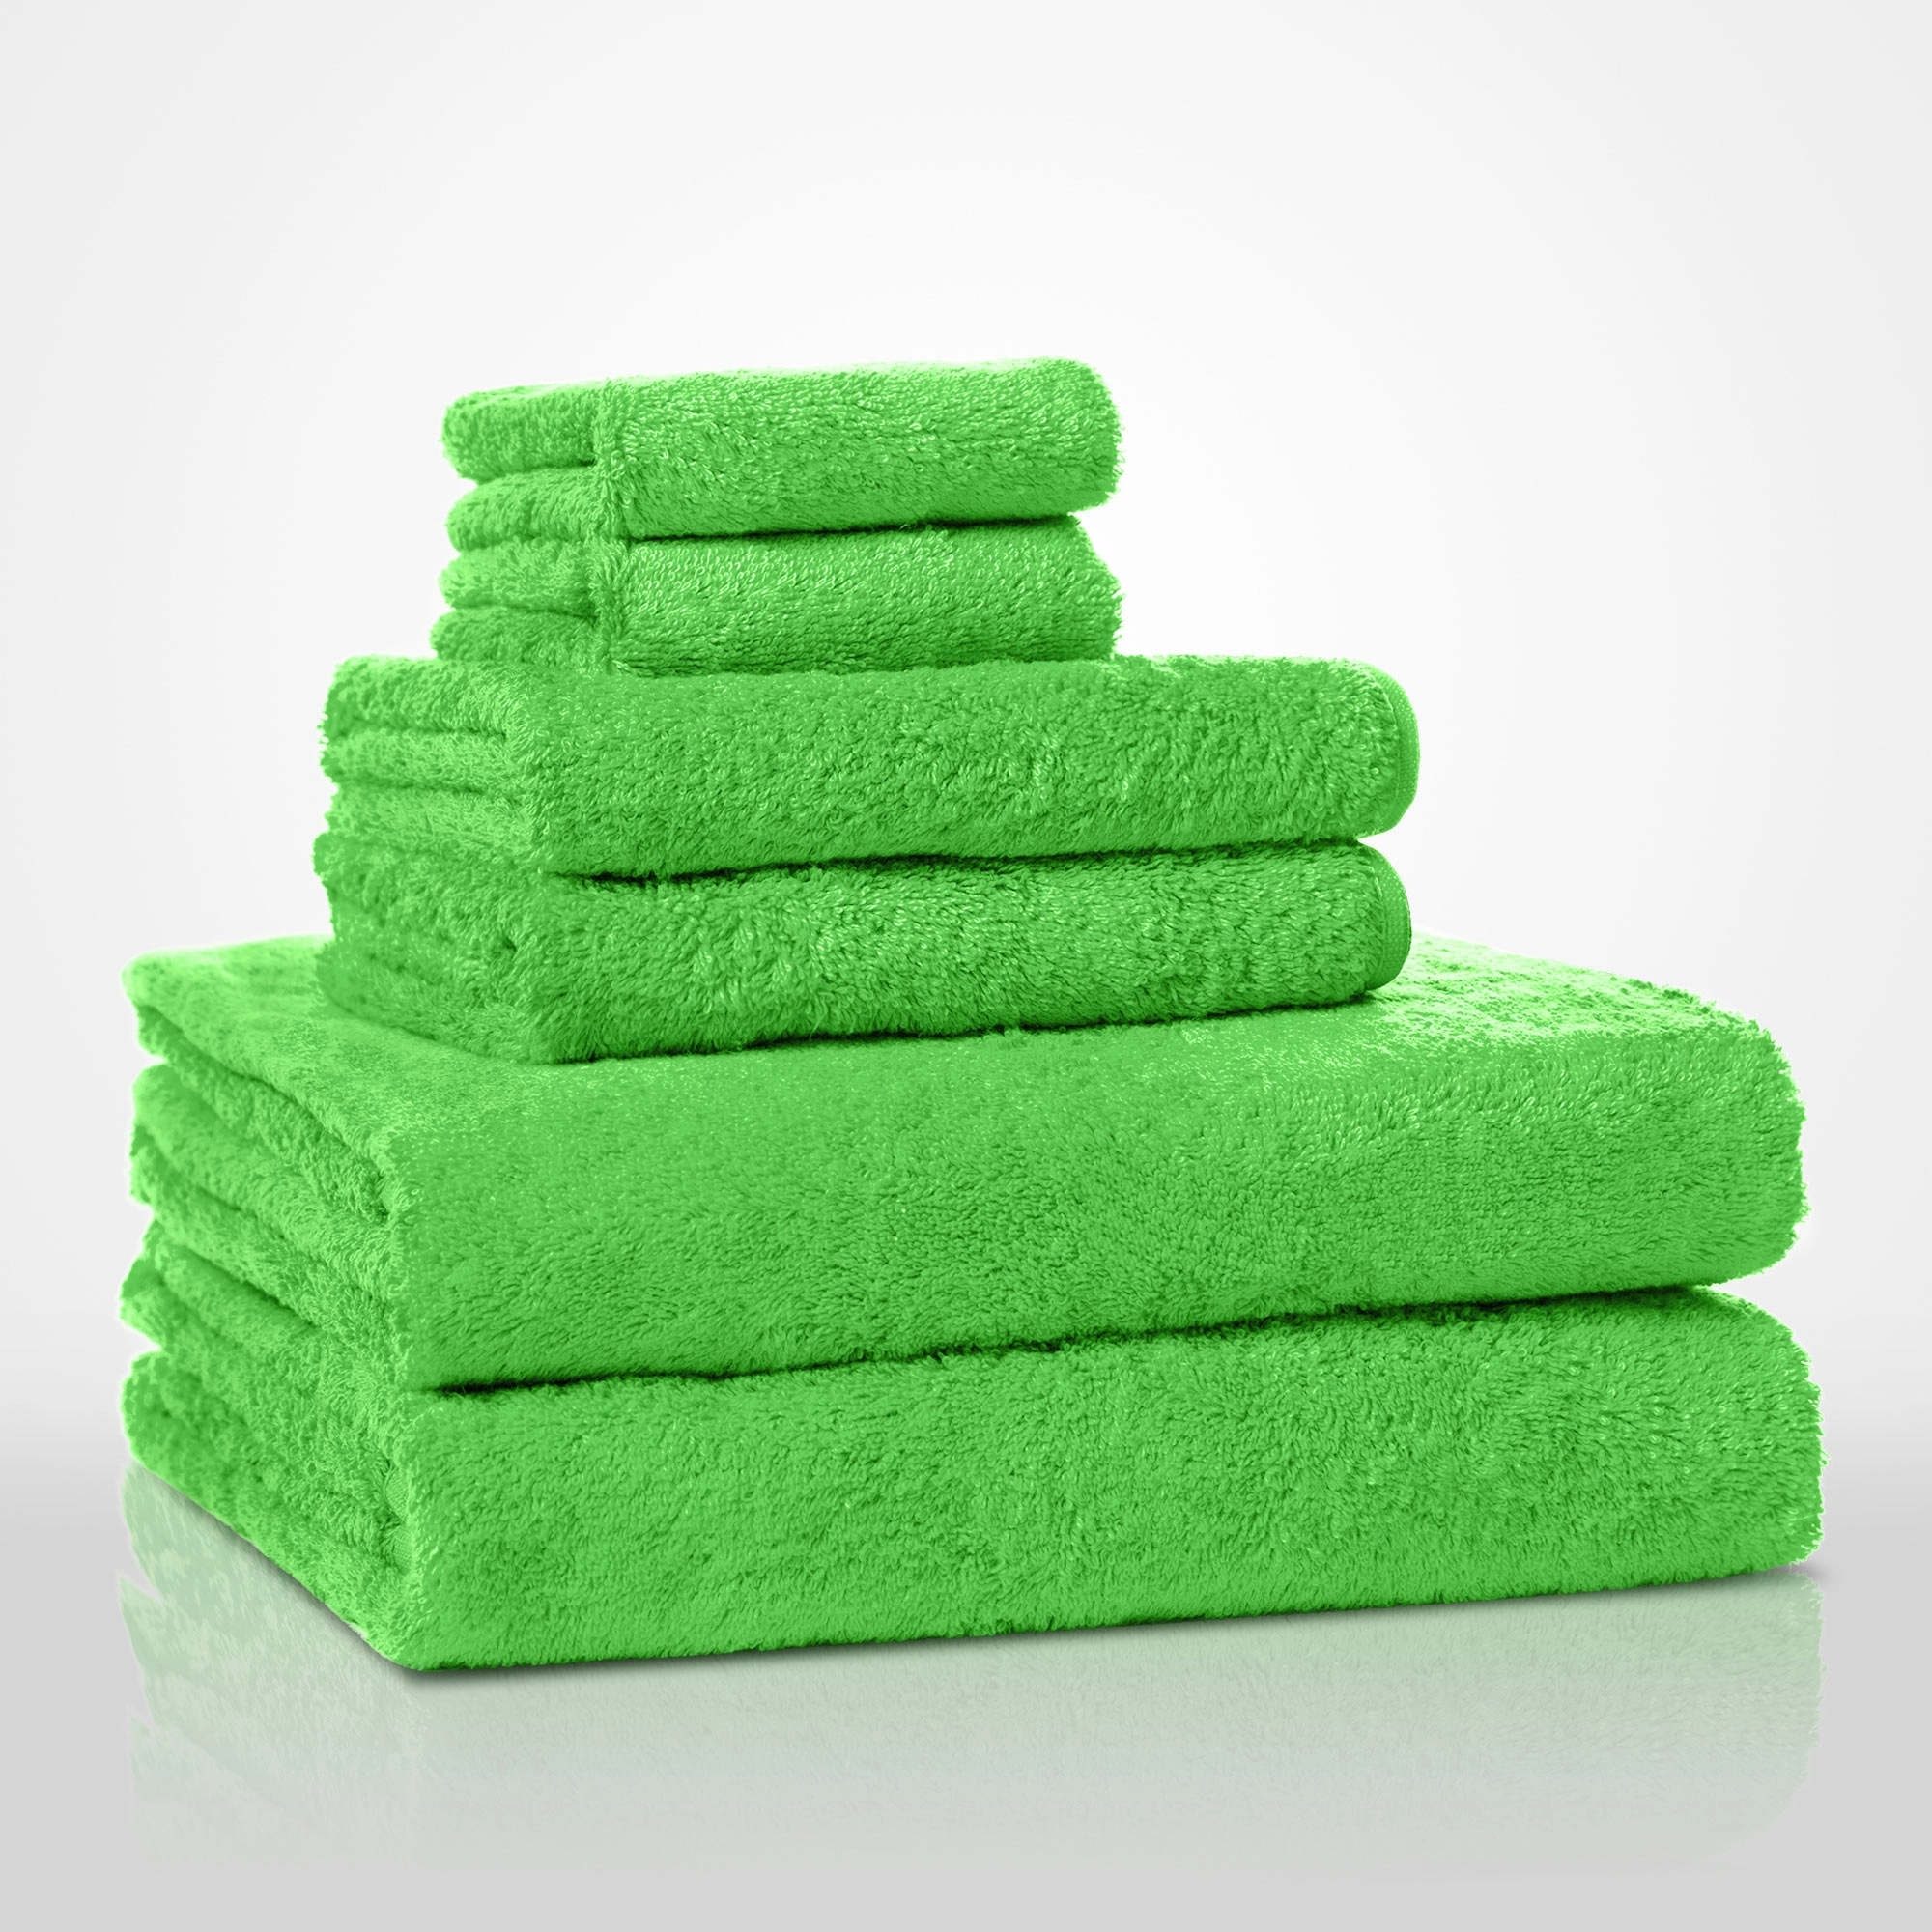 4 Piece Green Washcloth Set, 13 In 13 In 100% Turkish Cotton